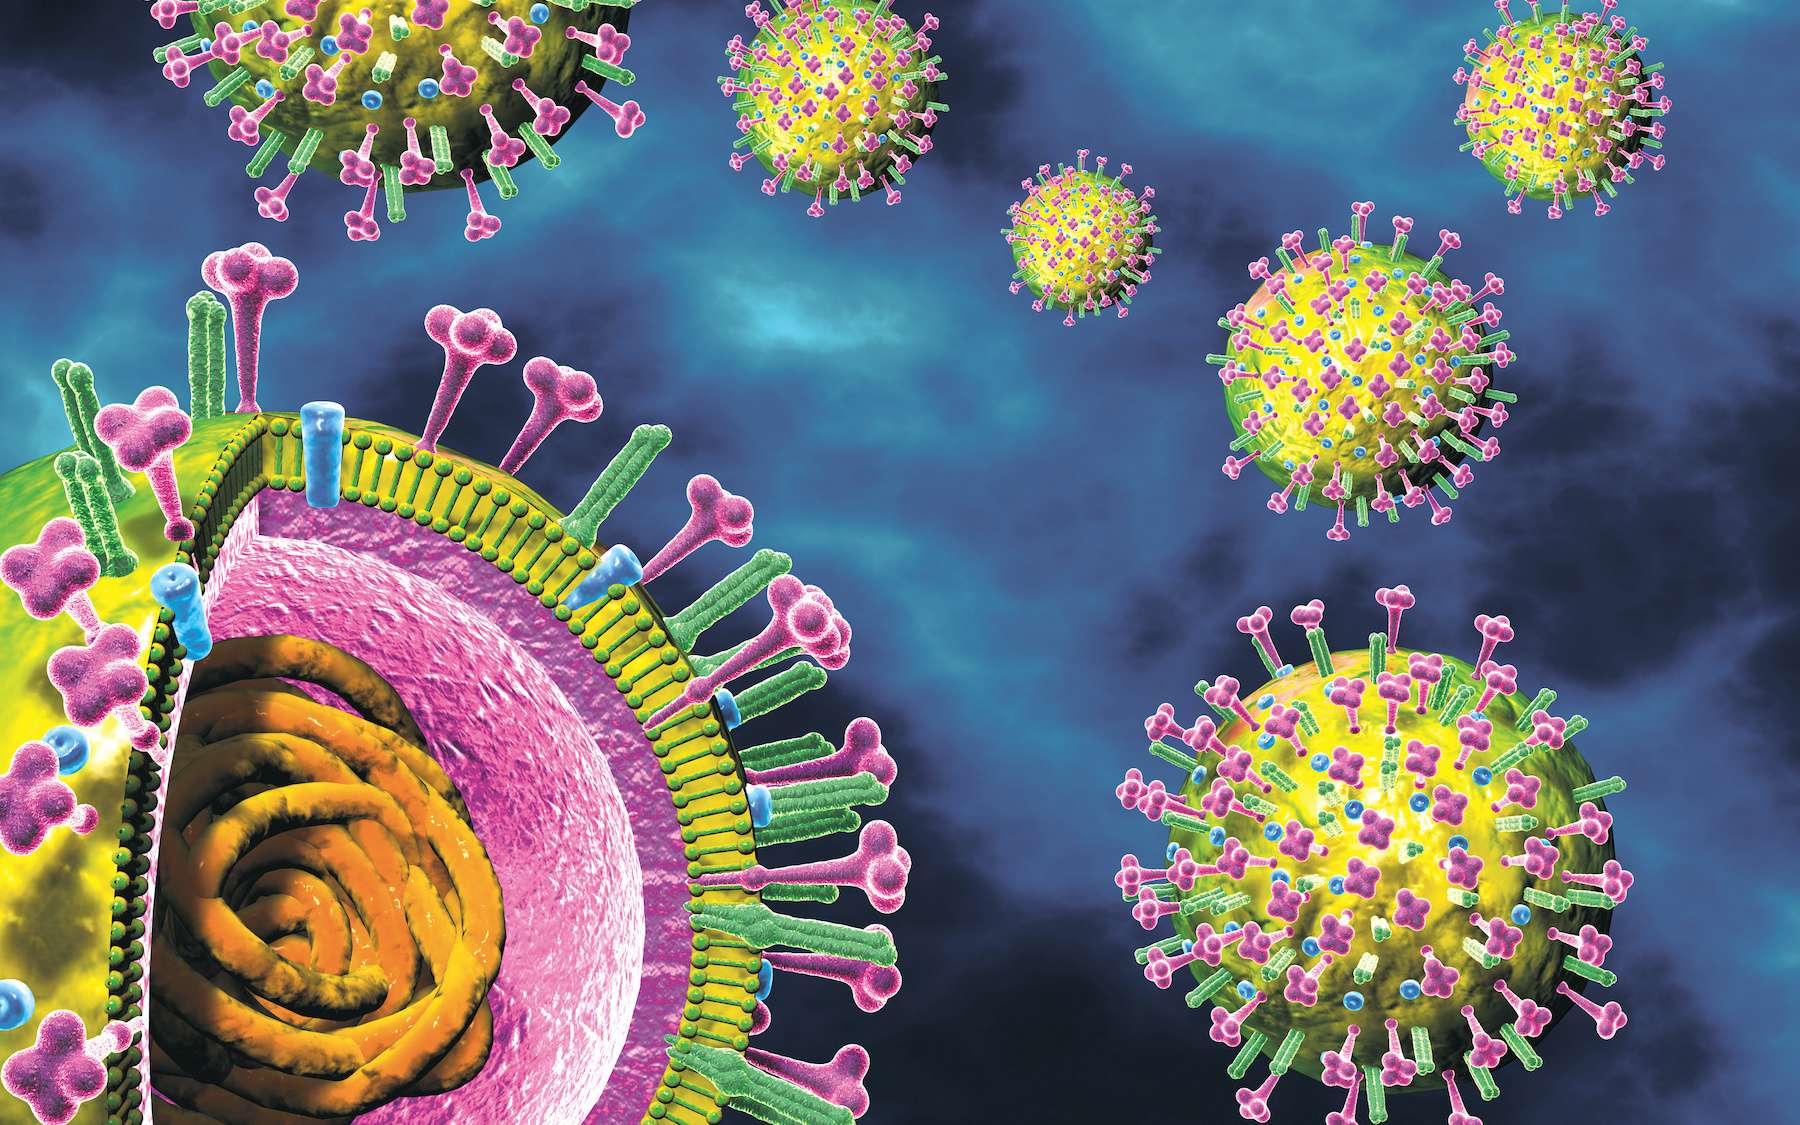 Le virus de la grippe ou virus influenza est un virus enveloppé à ARN. © Axel Kock, Adobe Stock